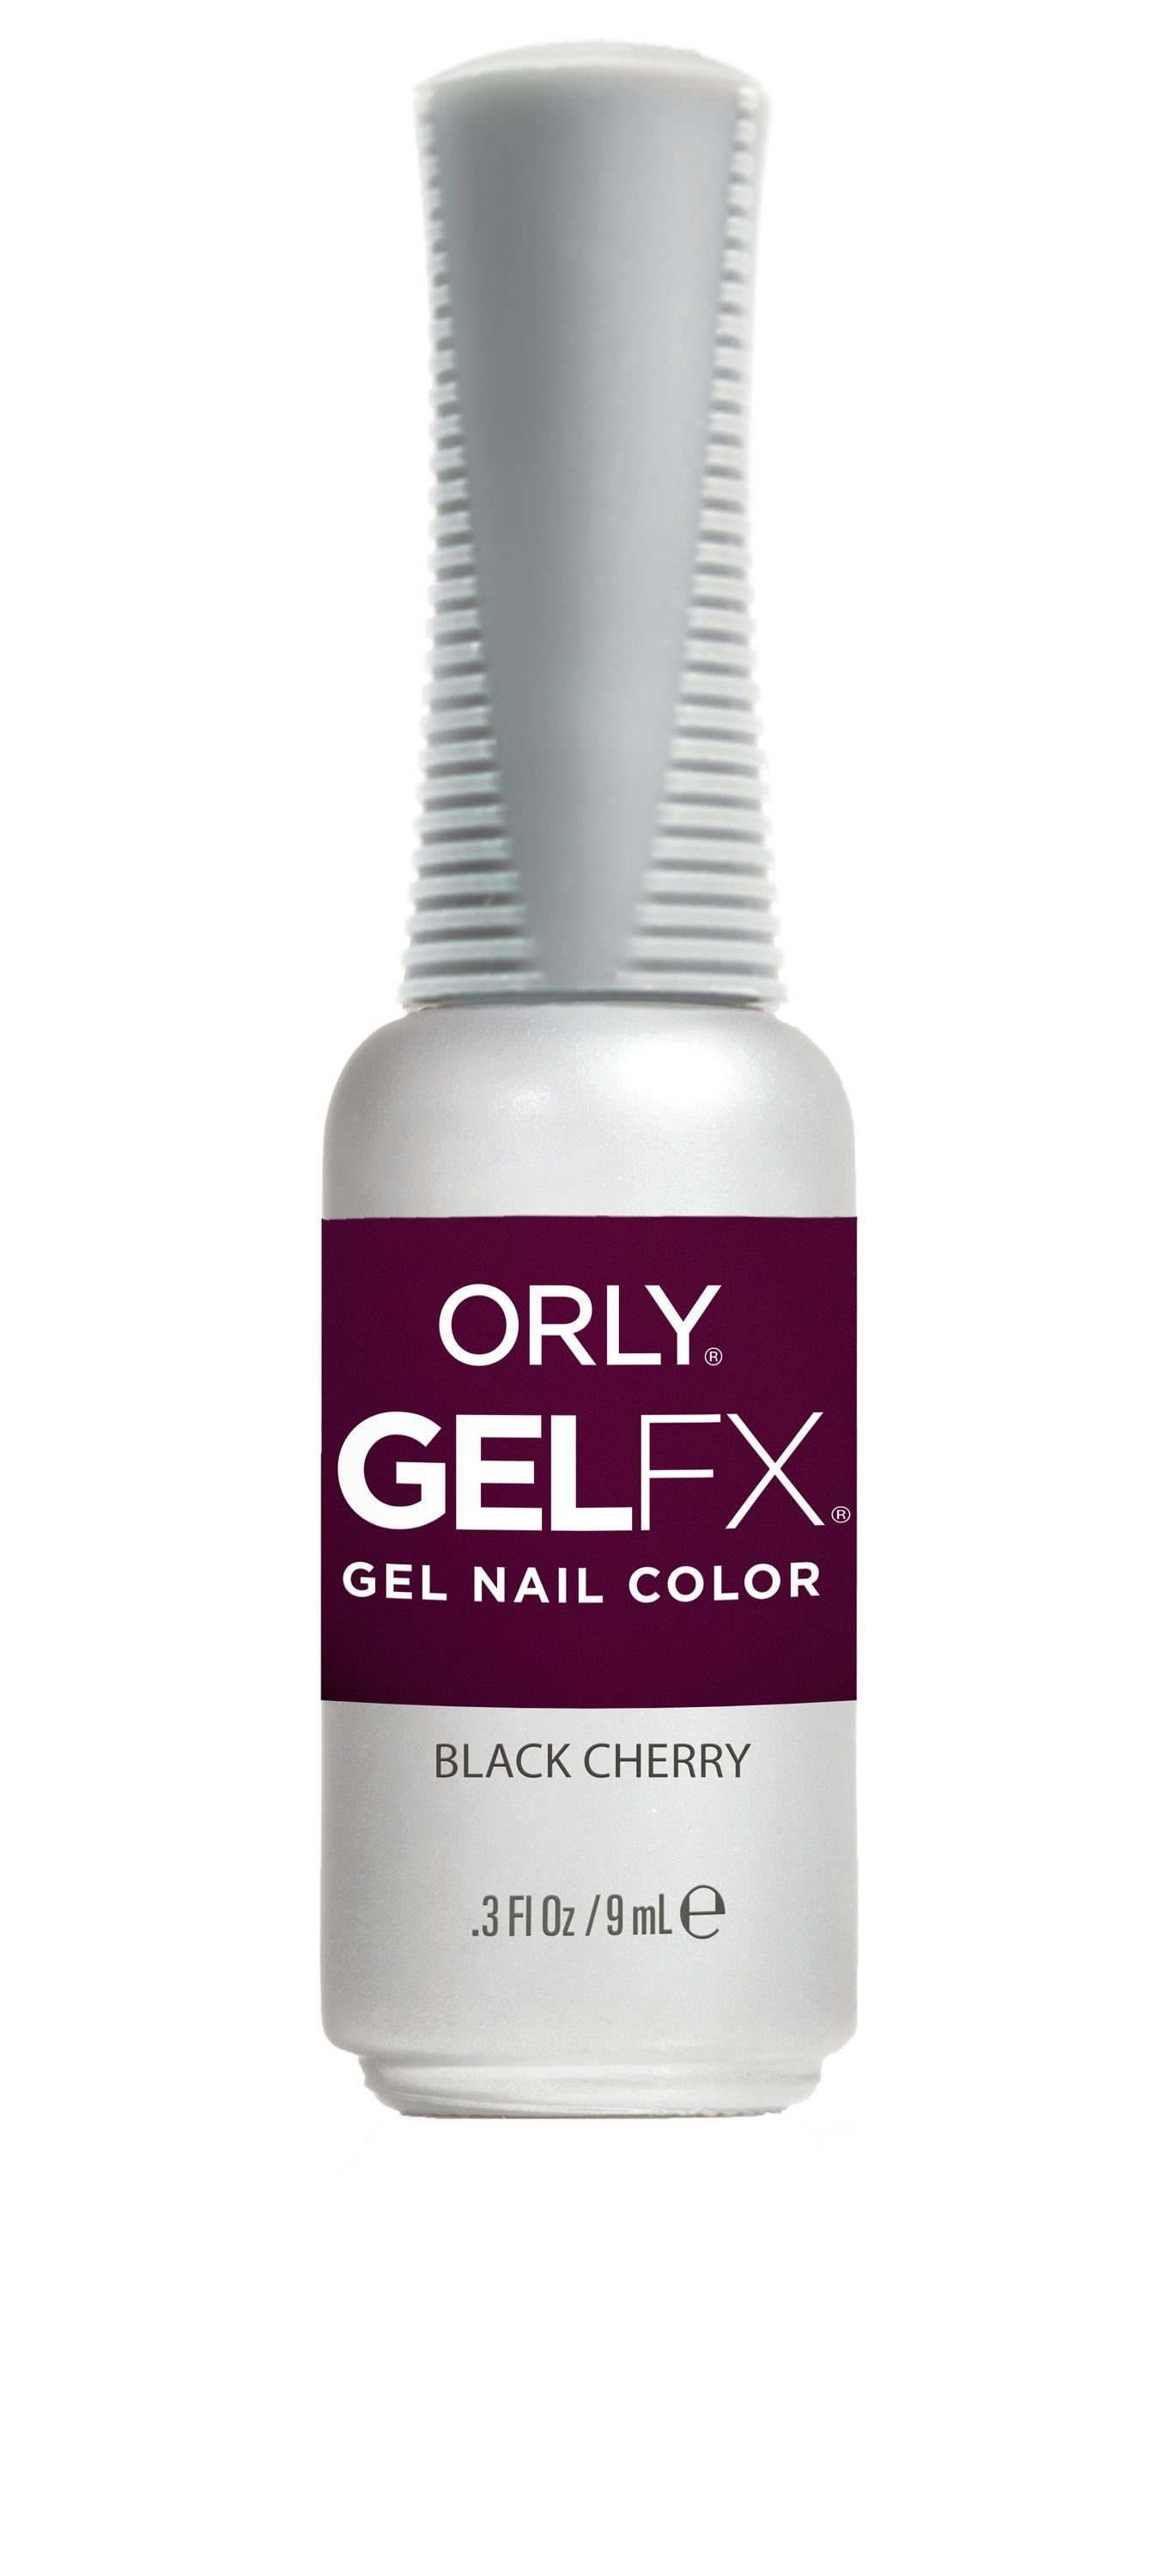 ORLY UV-Nagellack GEL FX Black Cherry, 9ML